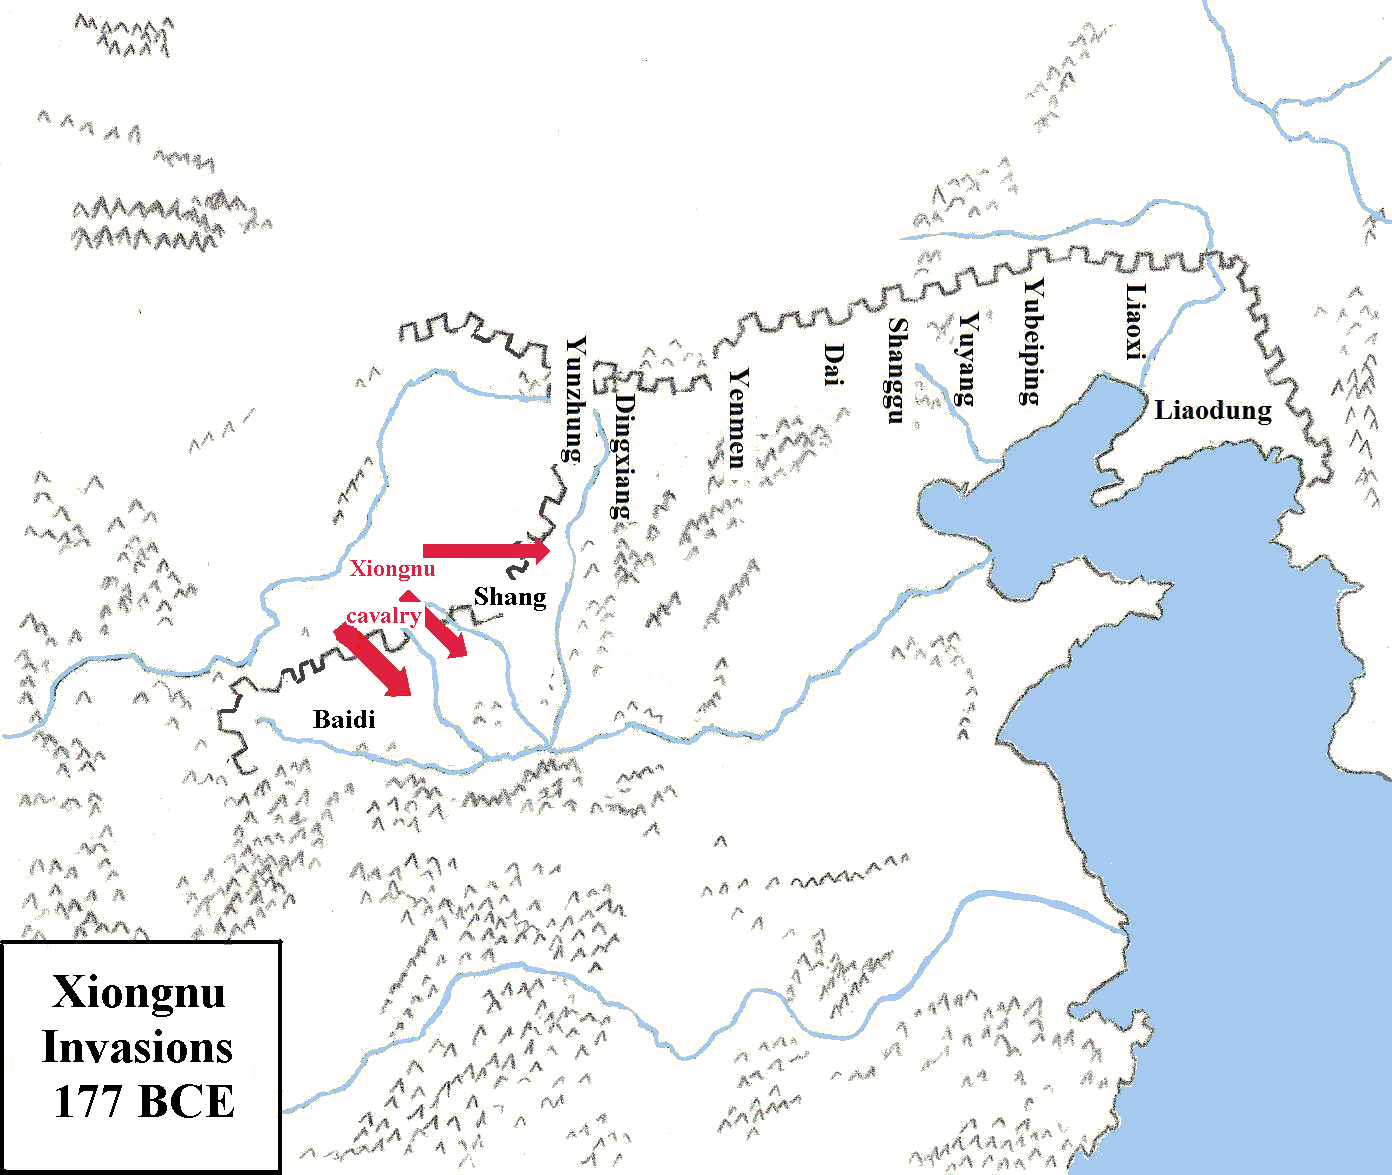 Xiongnu invasions in 177 BCE